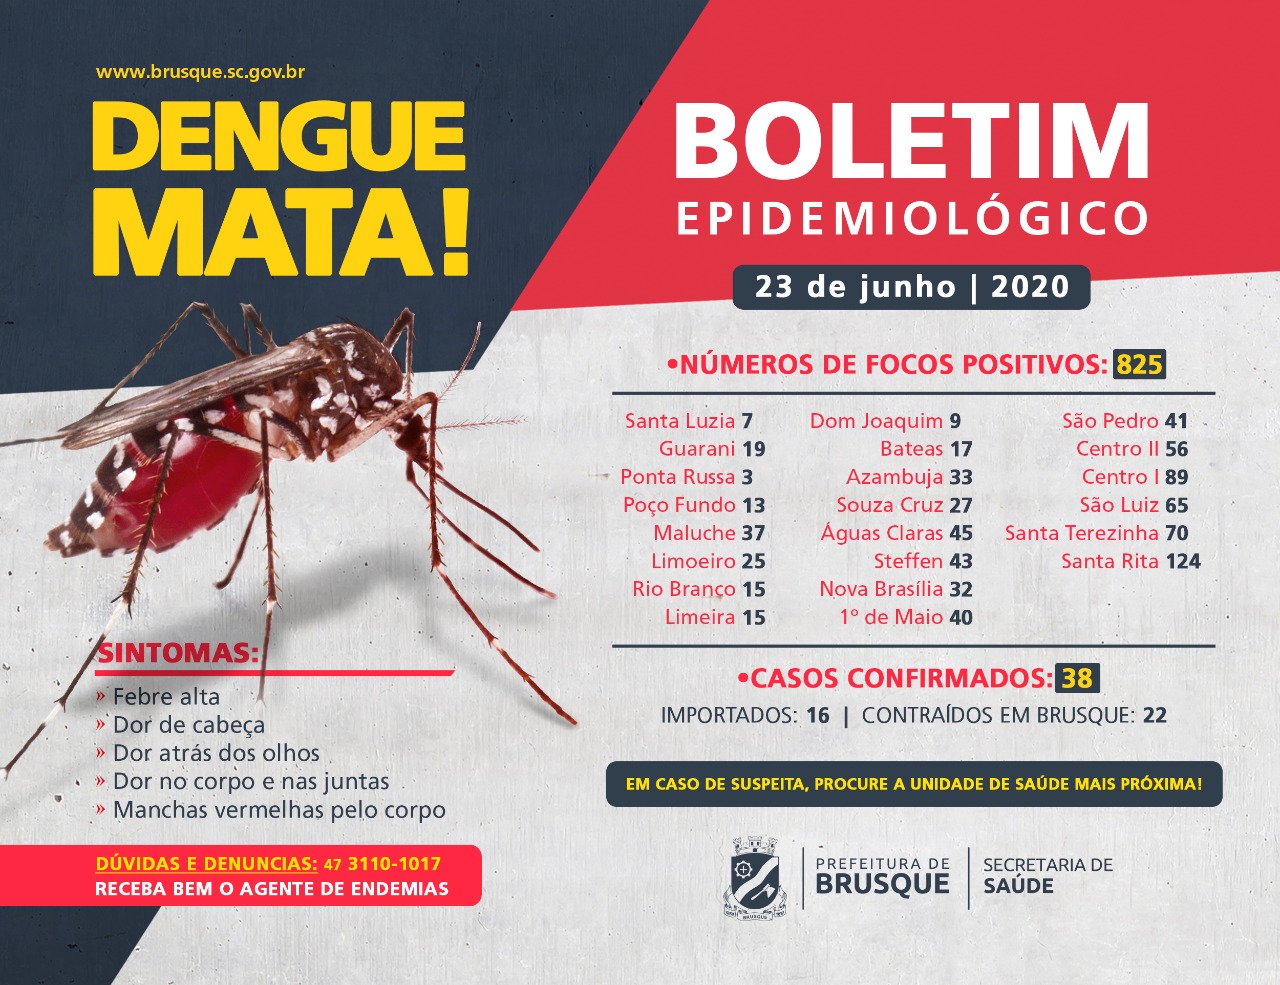 Confira o Boletim Epidemiológico da Dengue, desta terça-feira (23)